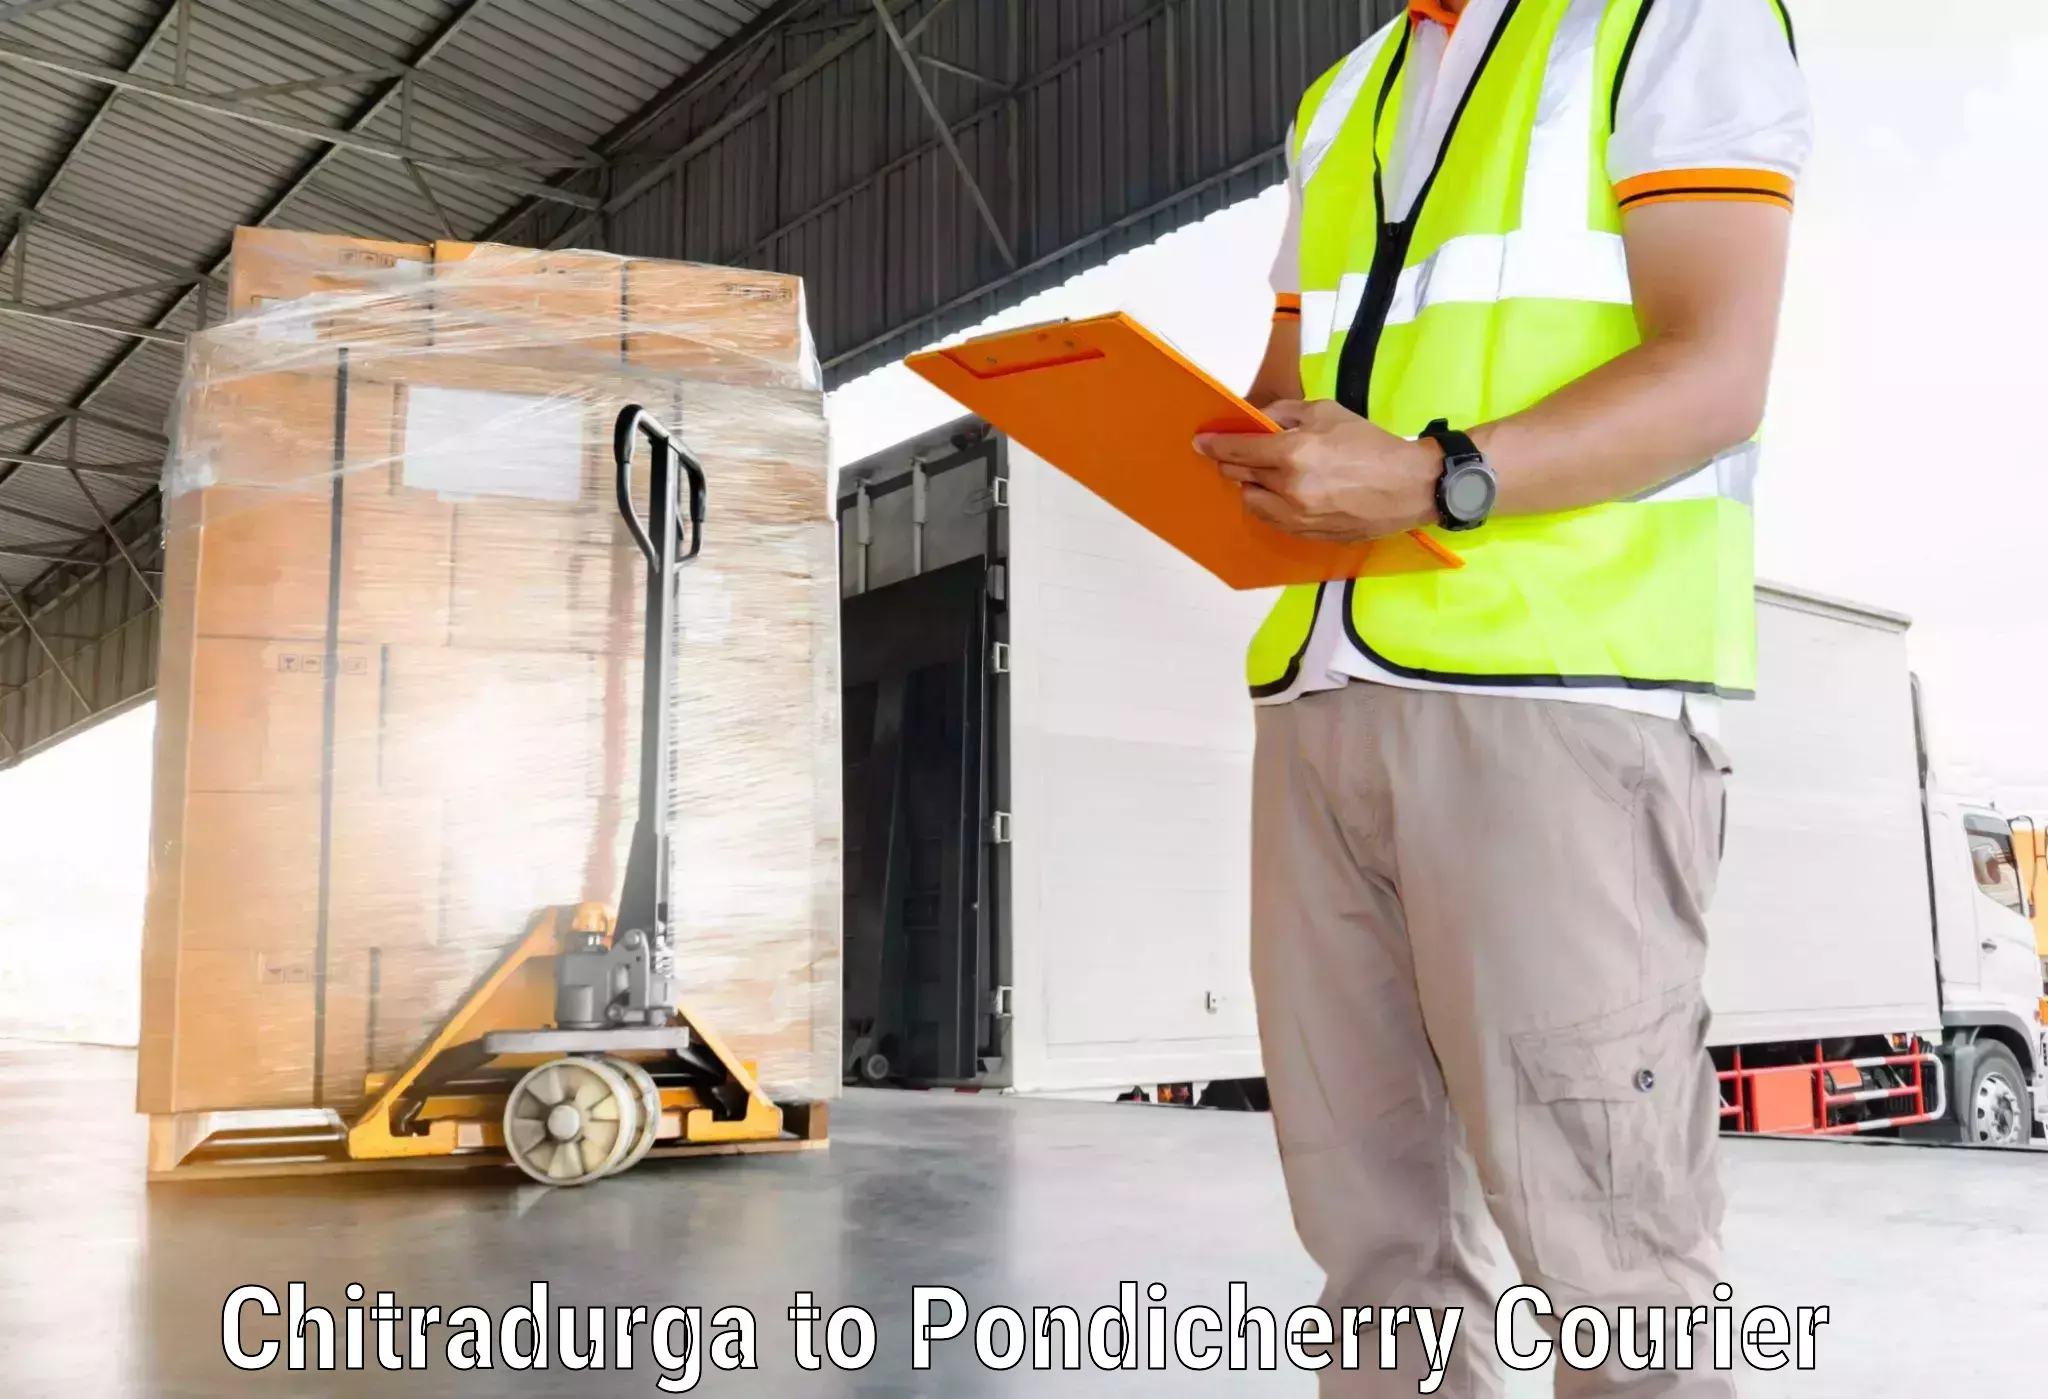 Nationwide courier service Chitradurga to Pondicherry